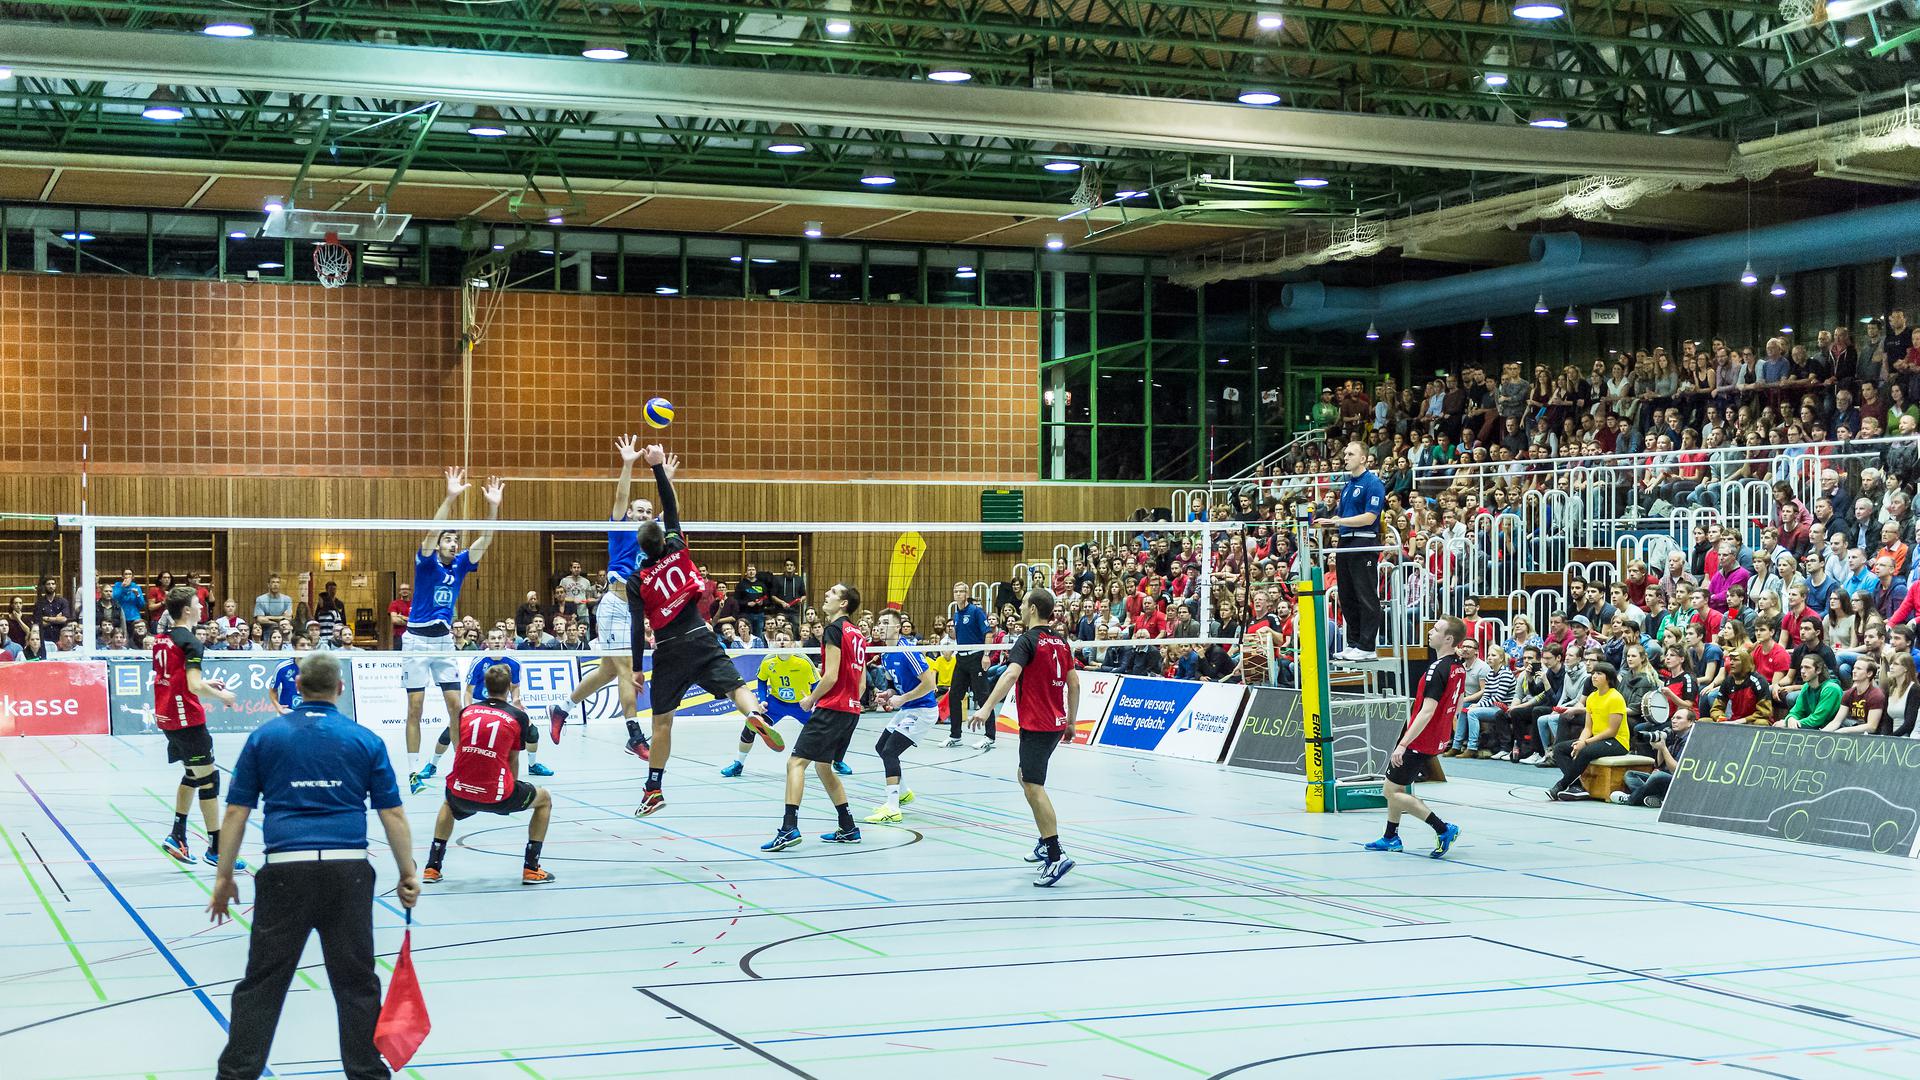 Uebersicht.

GES/ Volleyball/ DVV-Pokal Achtelfinale: SSC Karlsruhe - VfB Friedrichshafen, 26.10.2016 --

